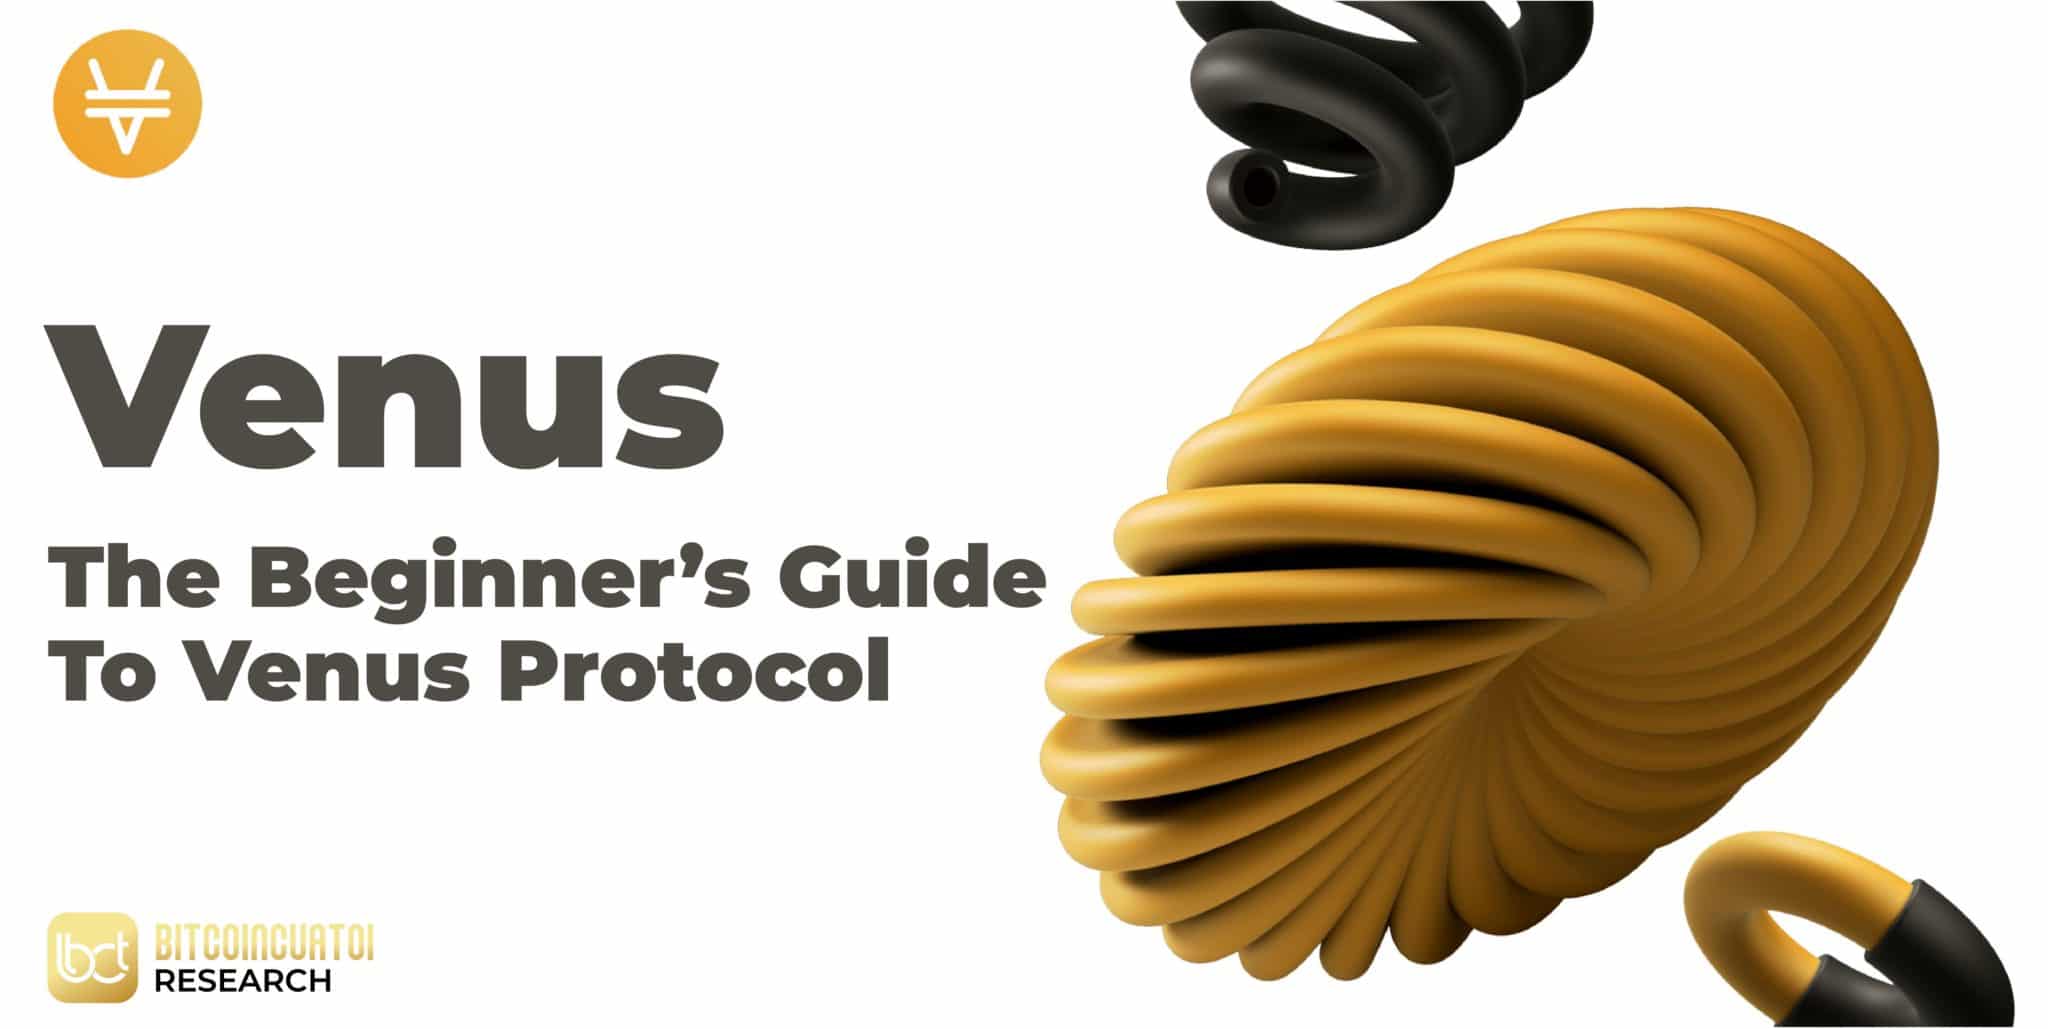 Hướng dẫn toàn tập về Venus Protocols - Bitcoincuatoi